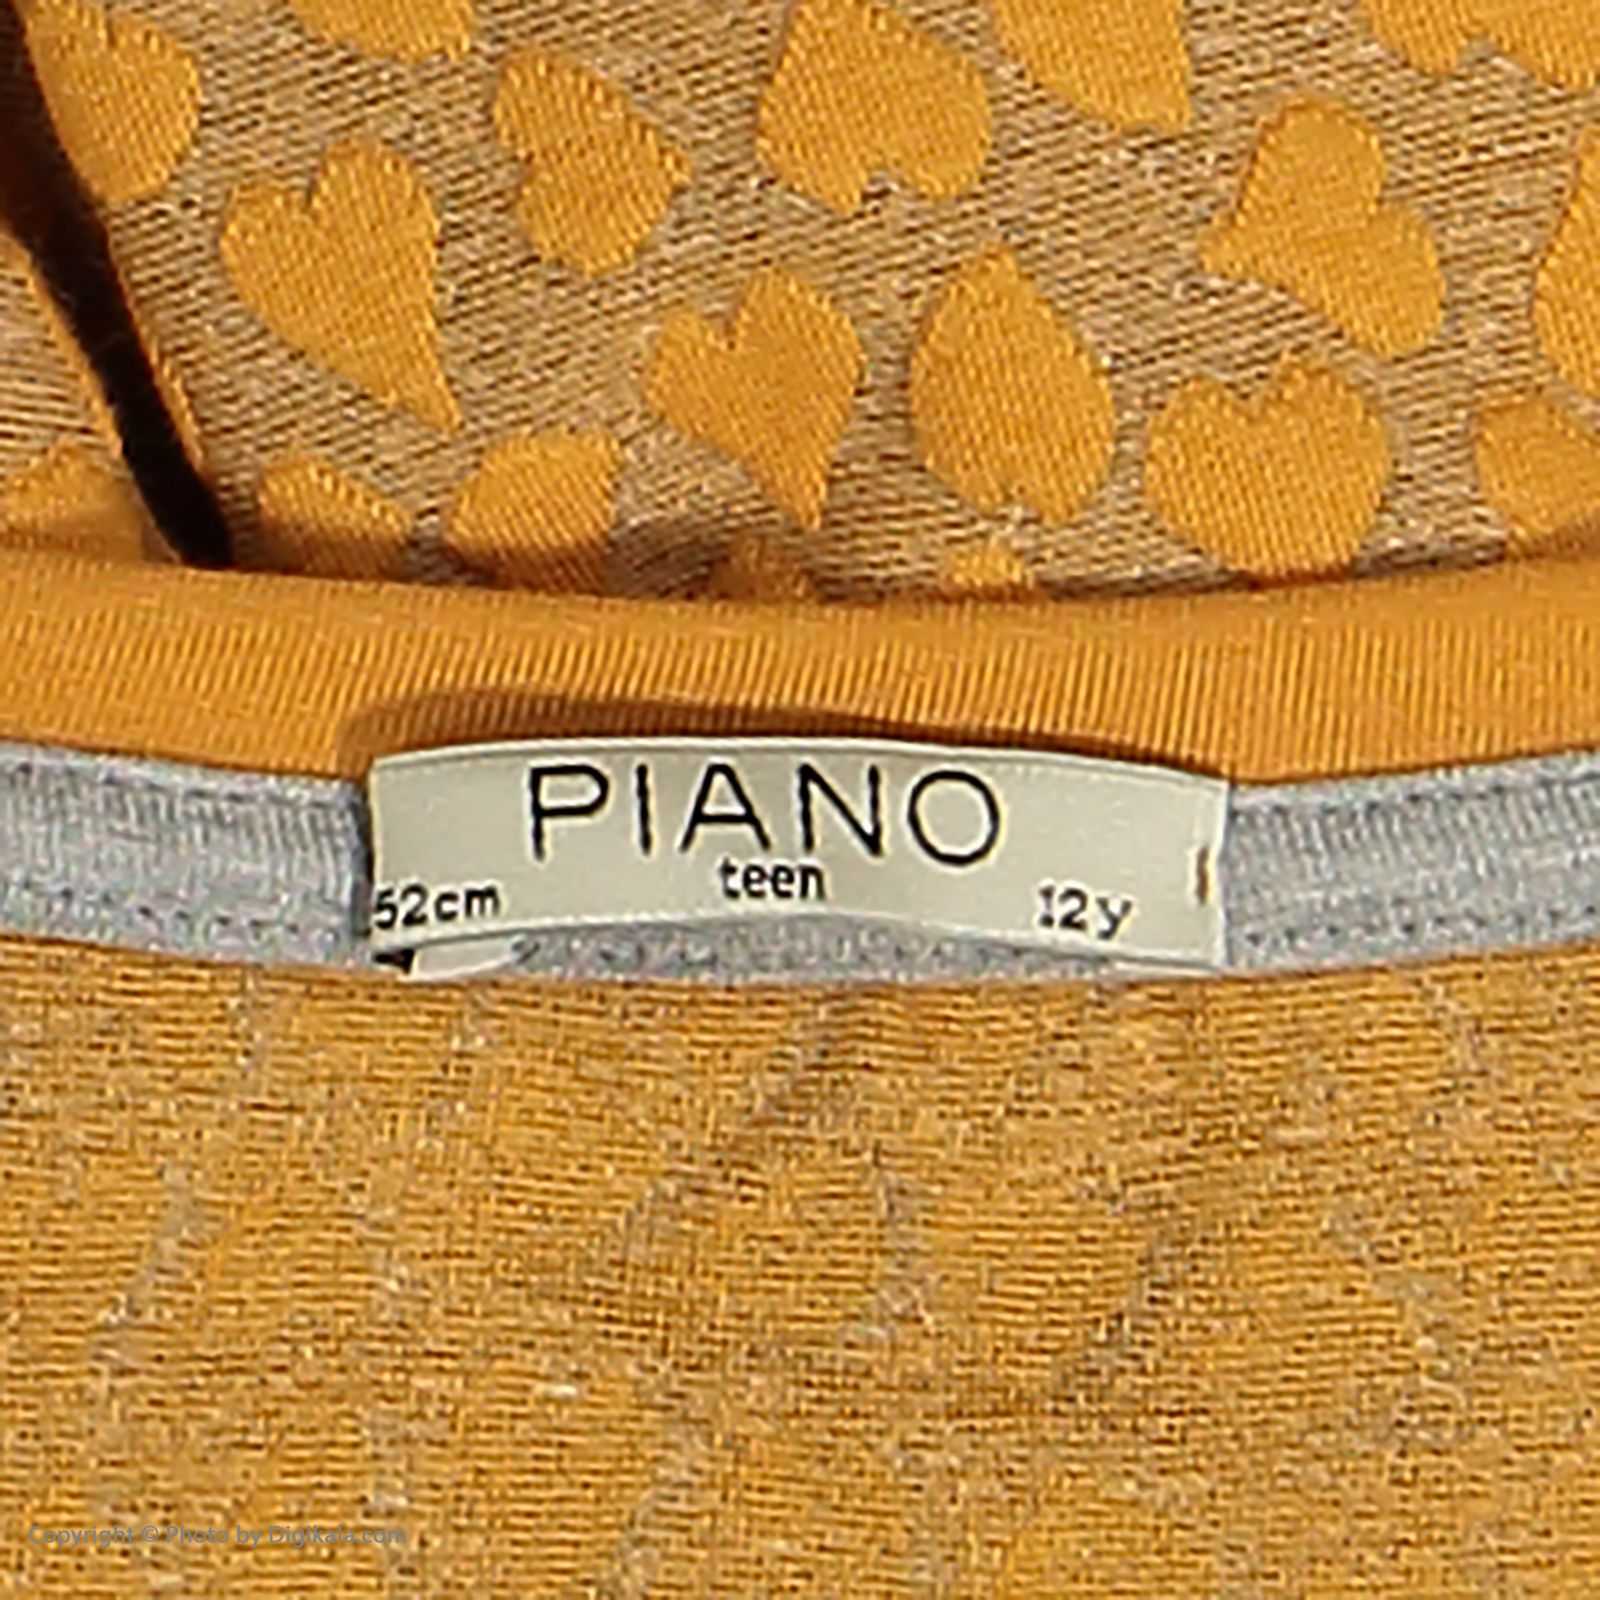 تی شرت دخترانه پیانو مدل 01816-23 -  - 5